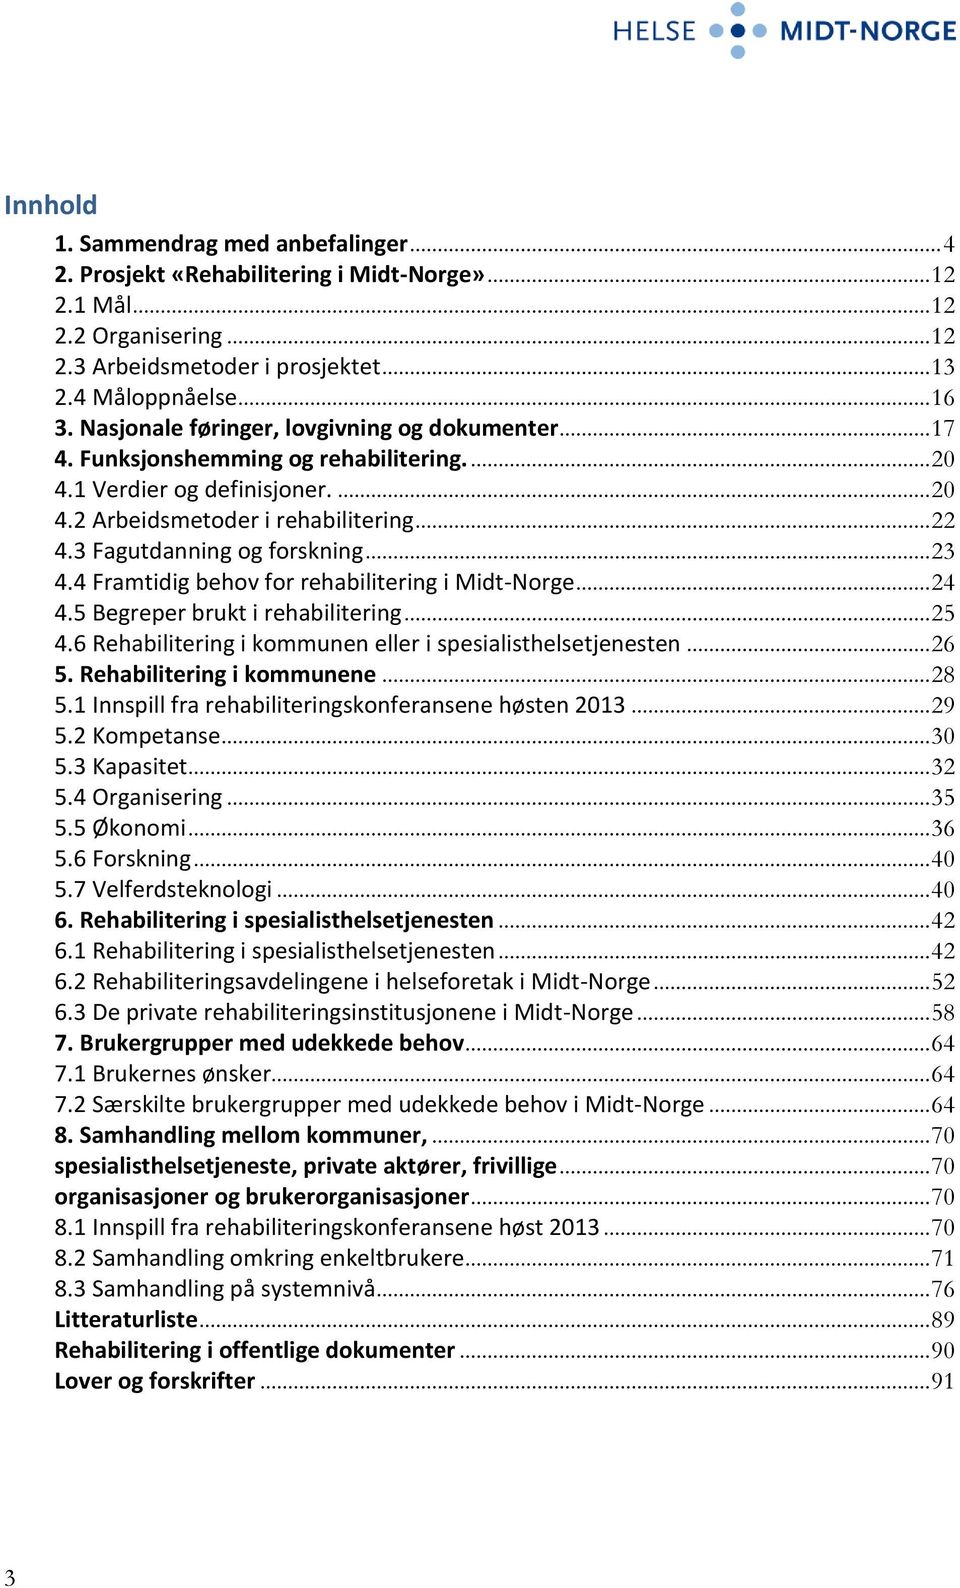 3 Fagutdanning og forskning... 23 4.4 Framtidig behov for rehabilitering i Midt-Norge... 24 4.5 Begreper brukt i rehabilitering... 25 4.6 Rehabilitering i kommunen eller i spesialisthelsetjenesten.